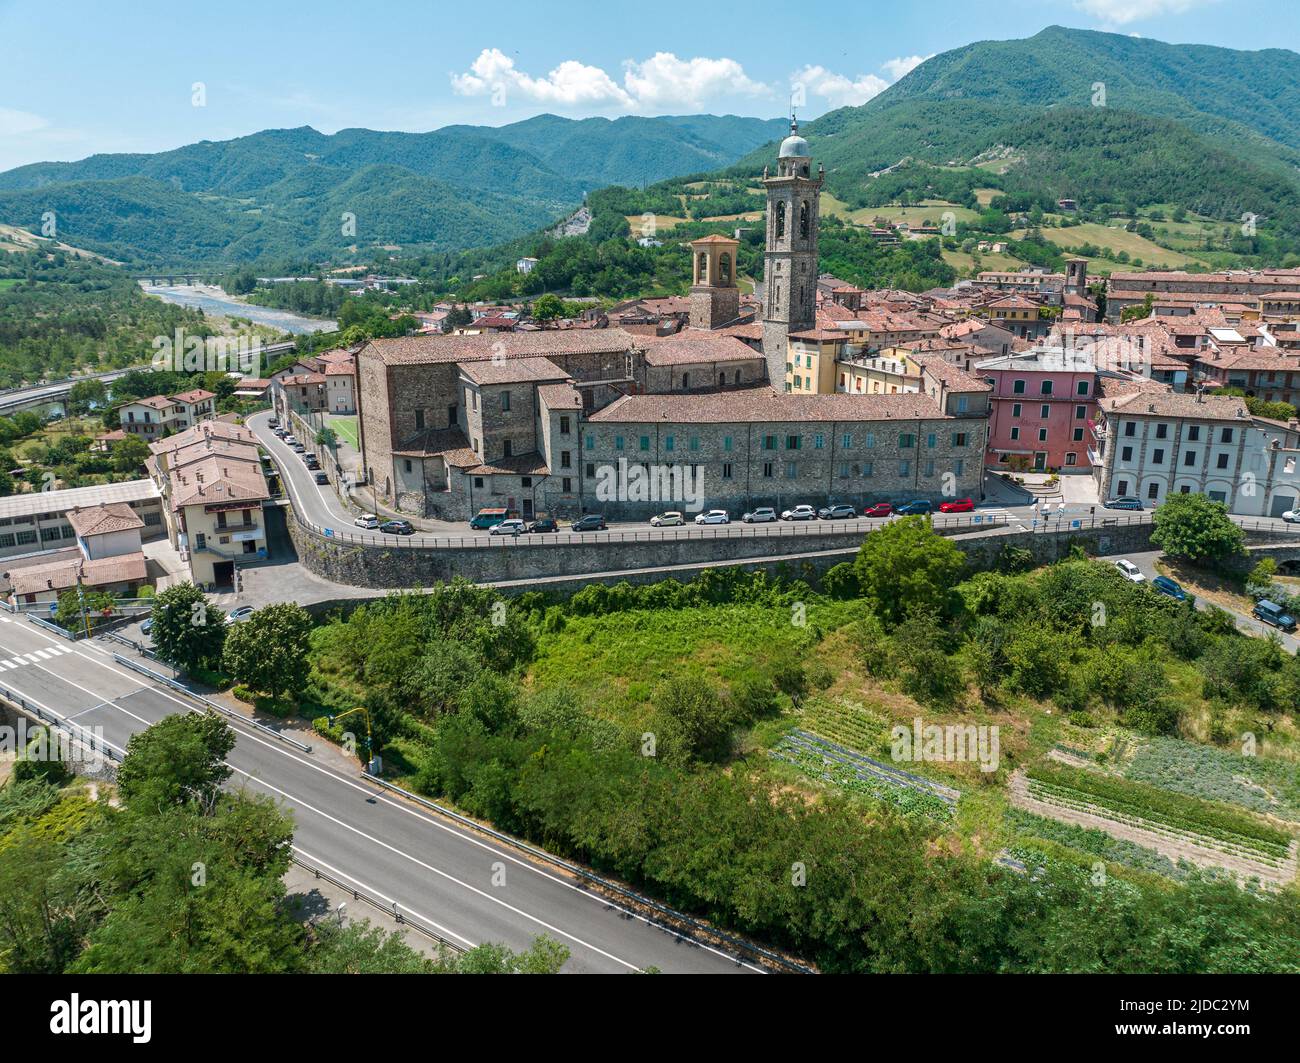 Vista aérea de Bobbio, una ciudad en el río Trebbia. Puente. Piacenza, Emilia-Romaña. Detalles del complejo urbano, techos y campanarios. Italia Foto de stock